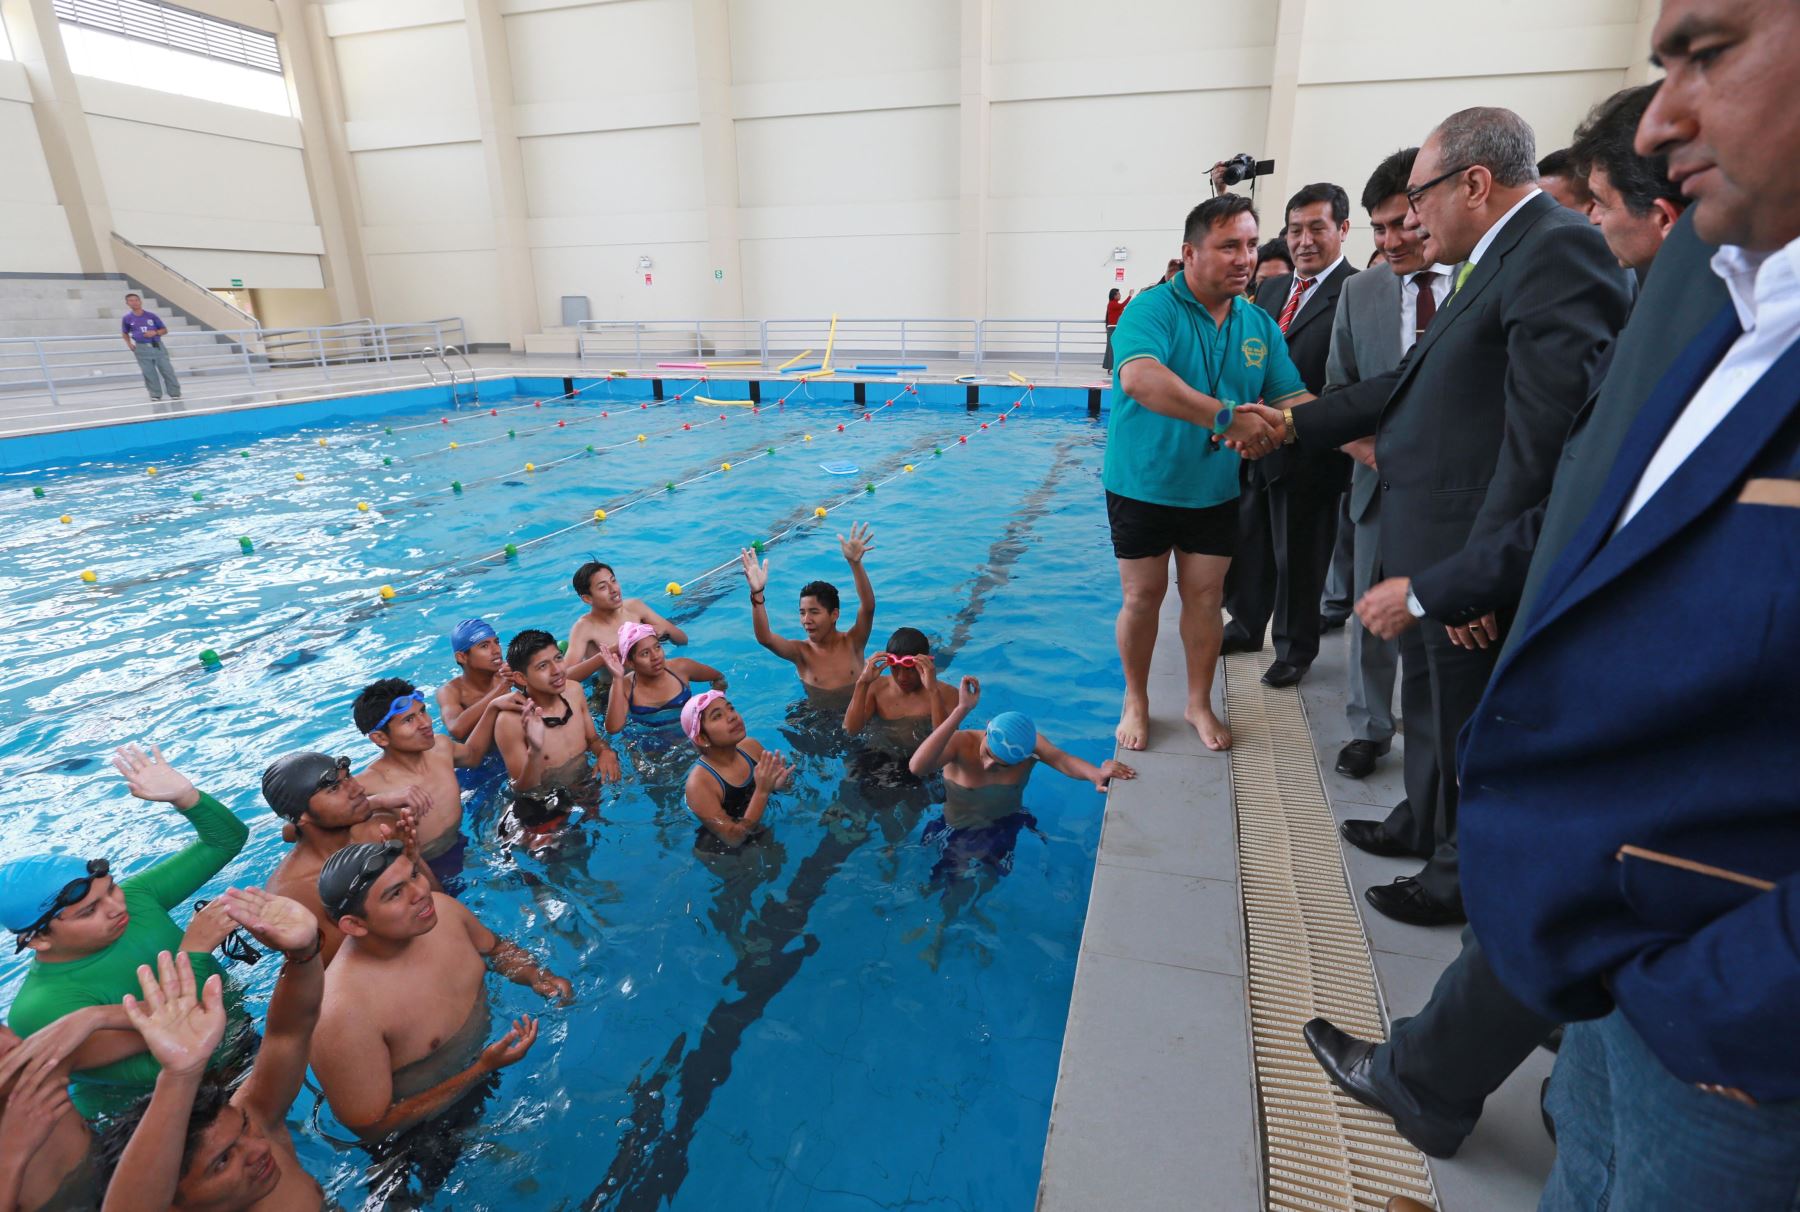 Colegio cuenta ahora con piscina para la práctica del deporte de sus estudiantes. Foto: ANDINA/Norman Córdova